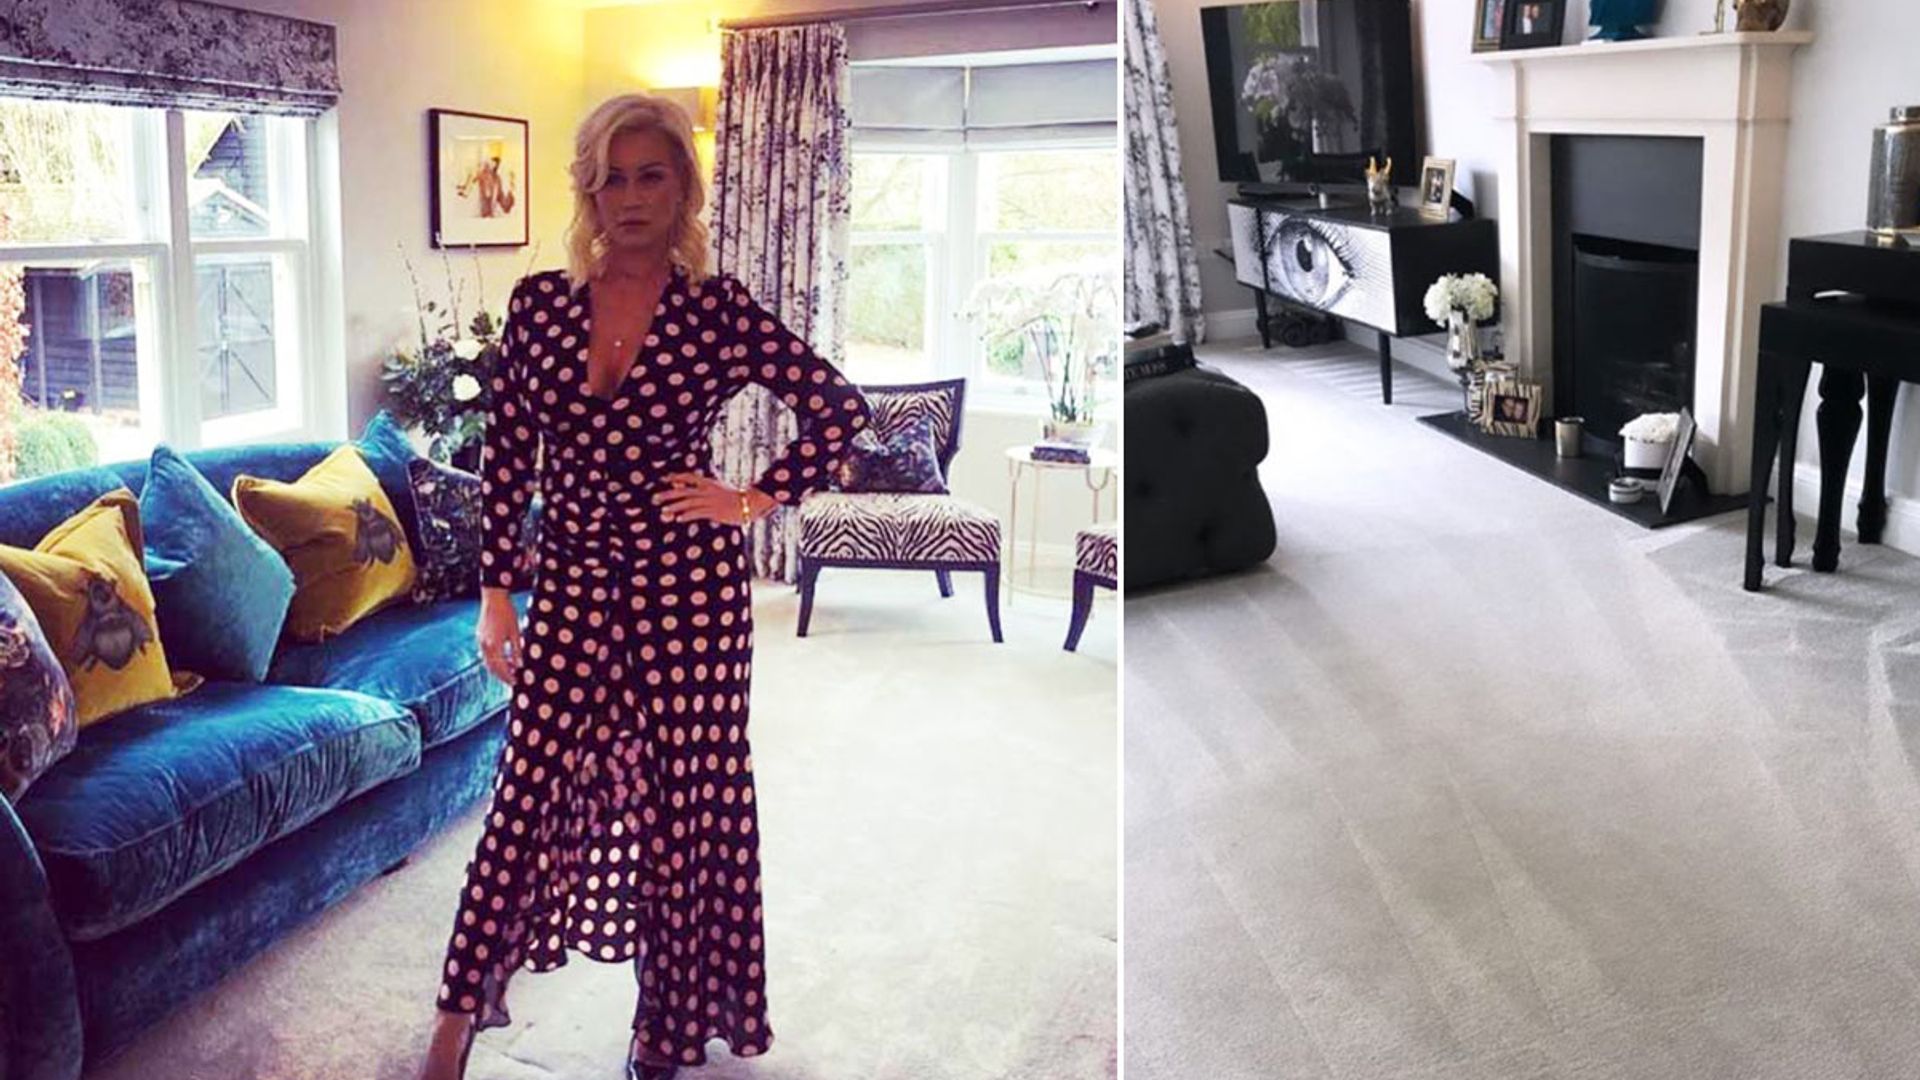 Denise Van Outen's living room transformation leaves fans speechless